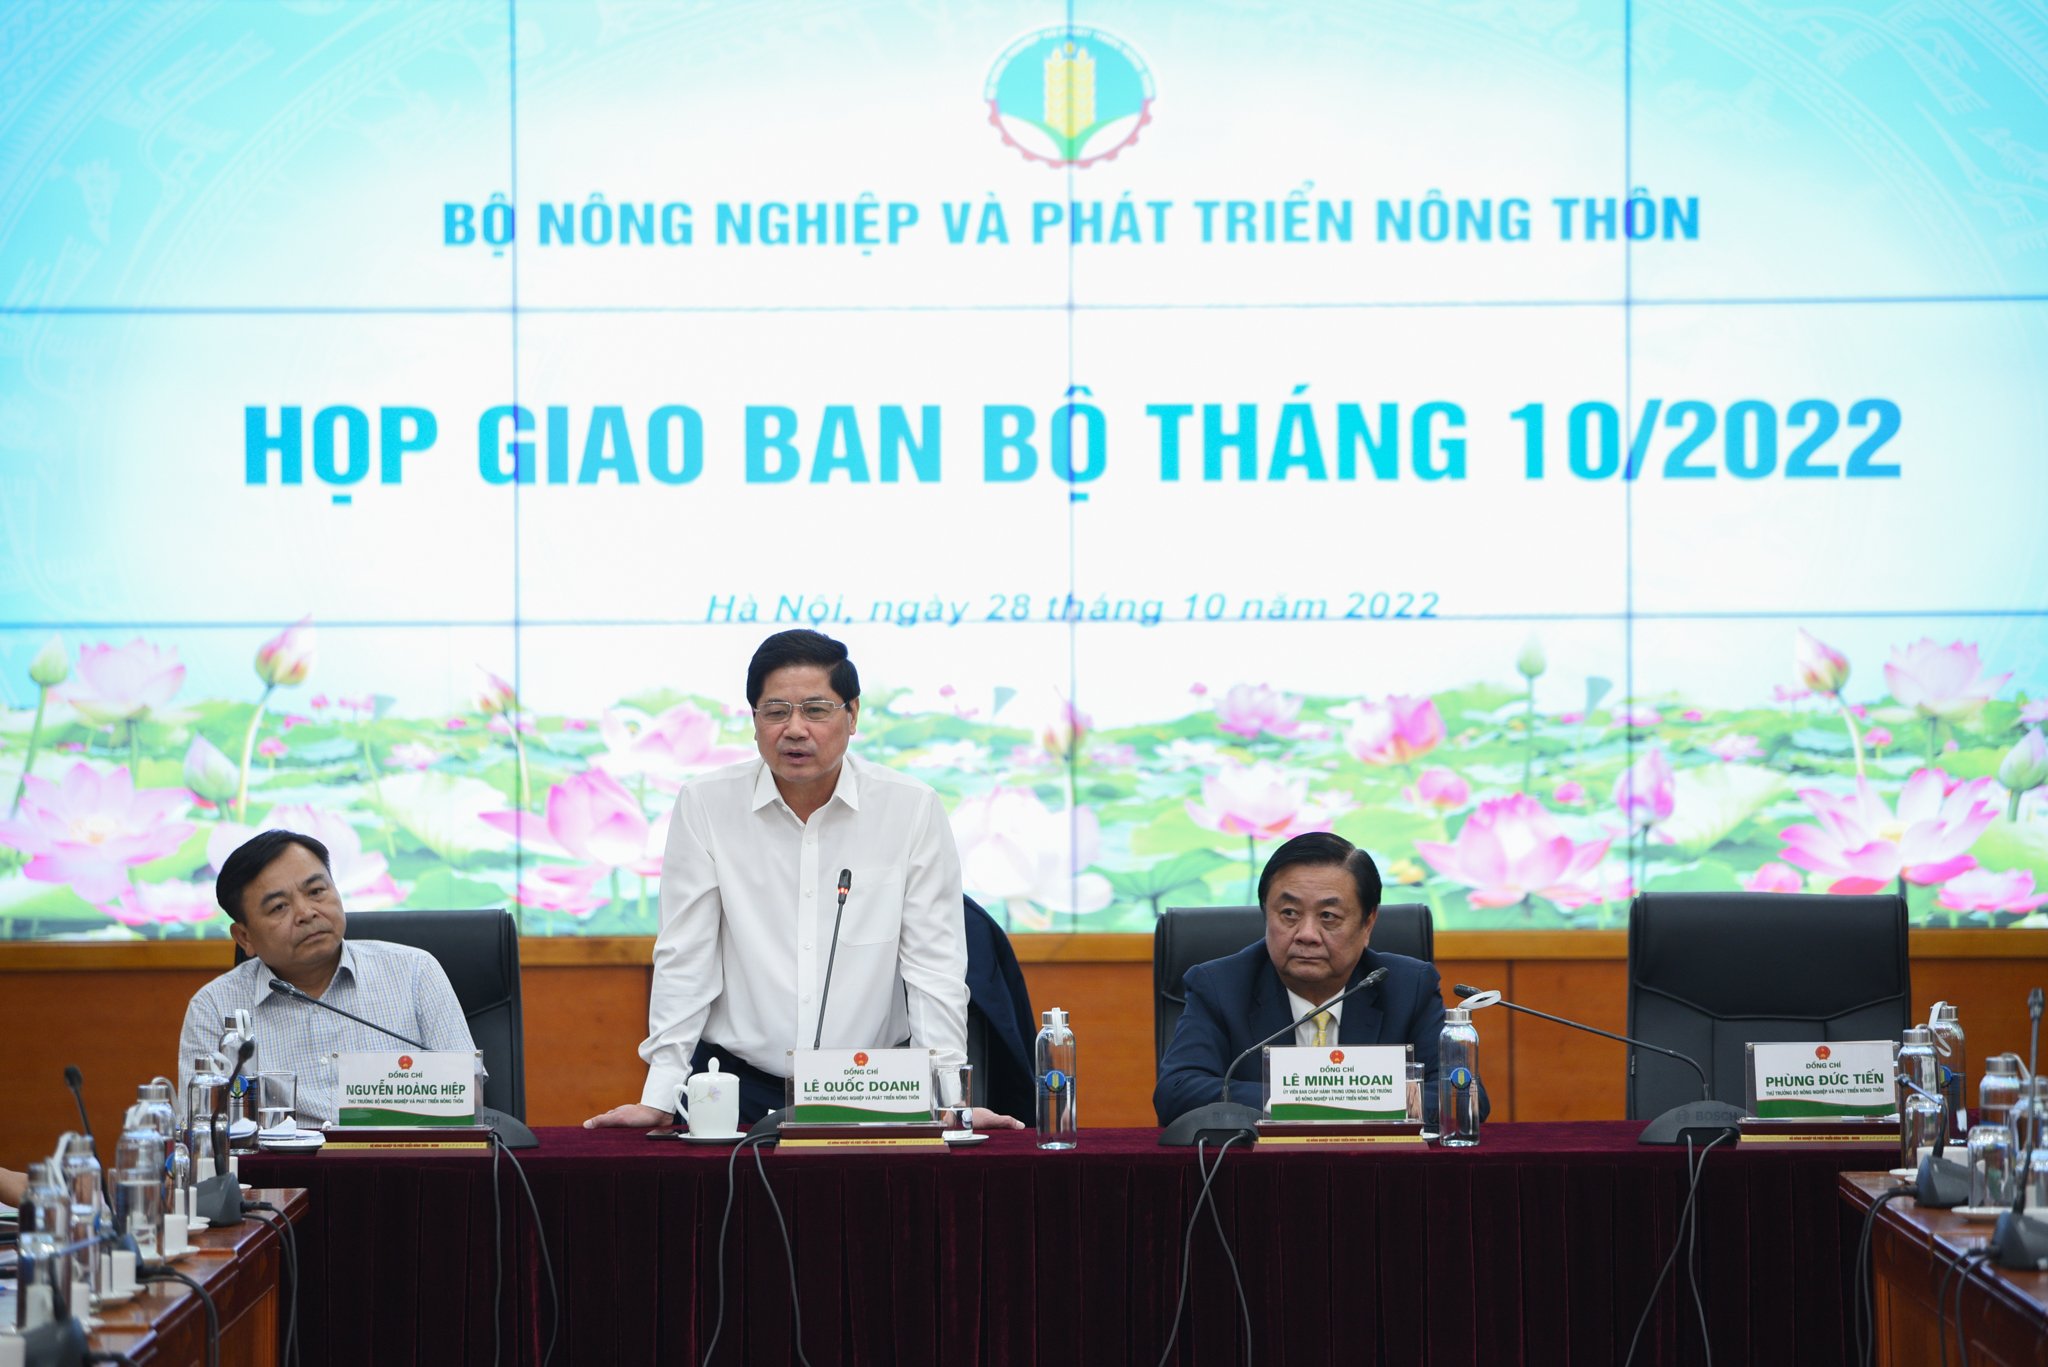 Thứ trưởng Lê Quốc Doanh phát biểu trong phiên họp giao ban Bộ NN-PTNT chiều 28/10 về vấn đề chặt bỏ cà phê xen canh sầu riêng. Ảnh: Tùng Đinh.